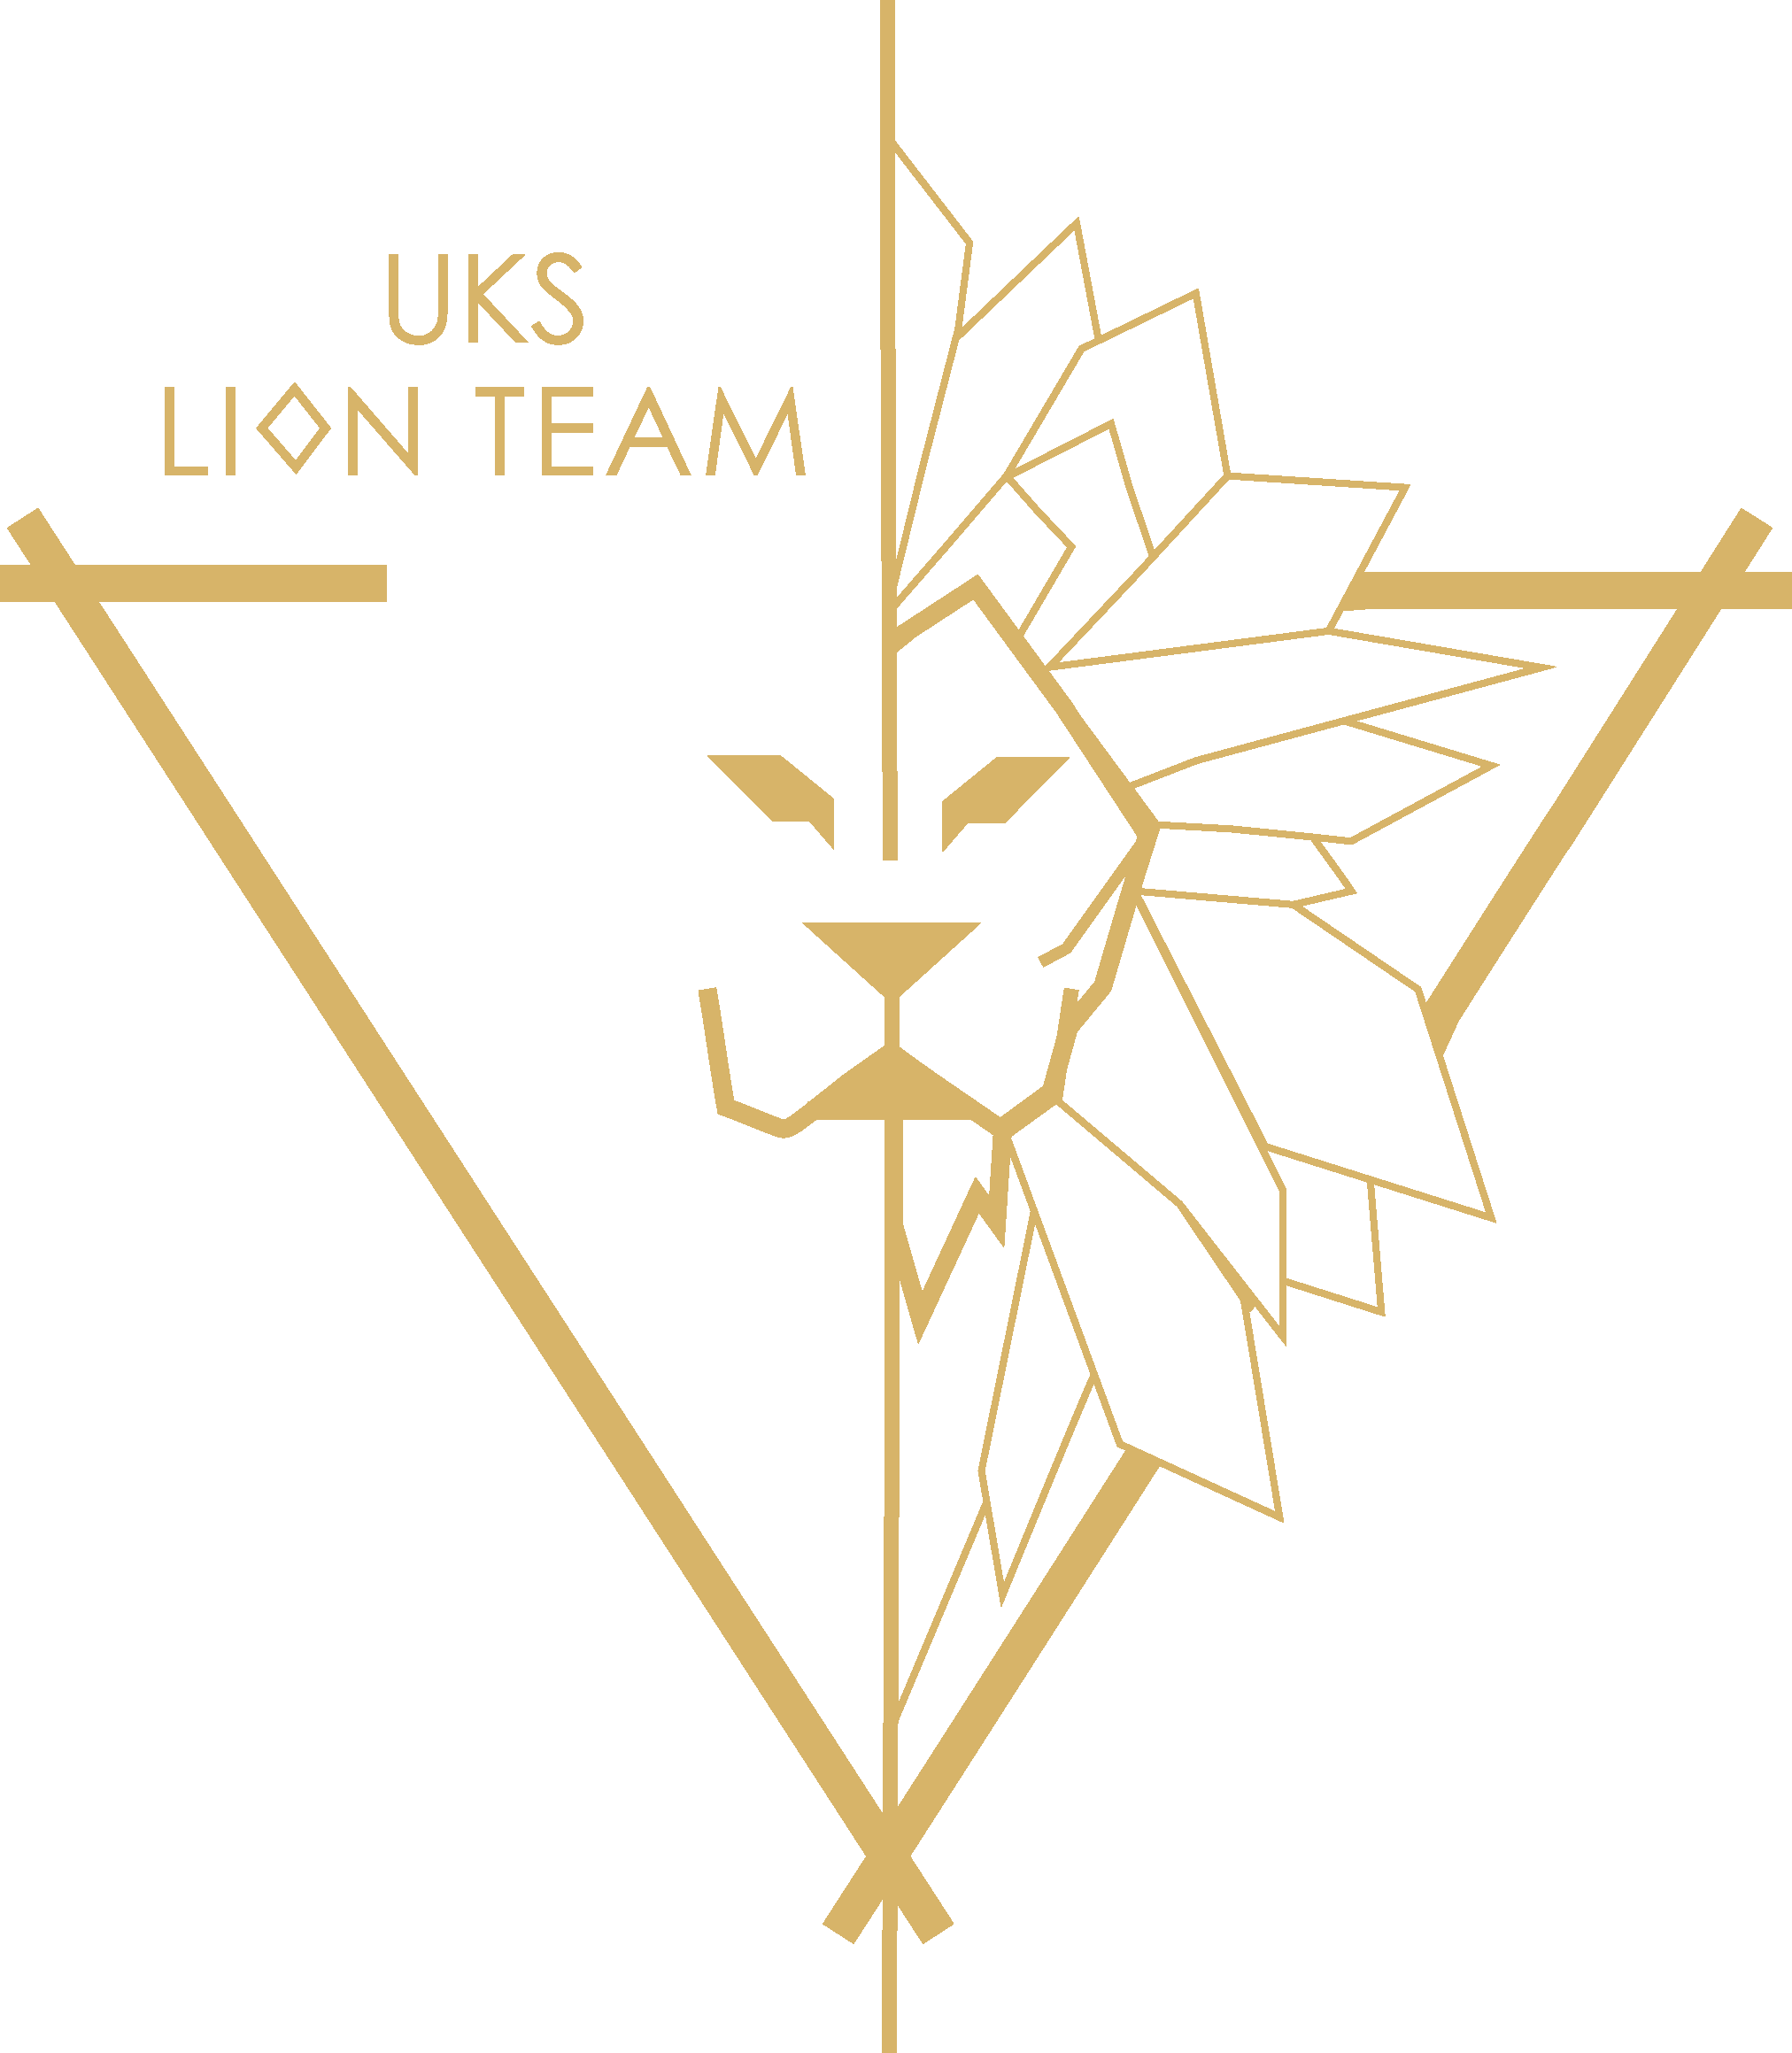 UKS LION TEAM